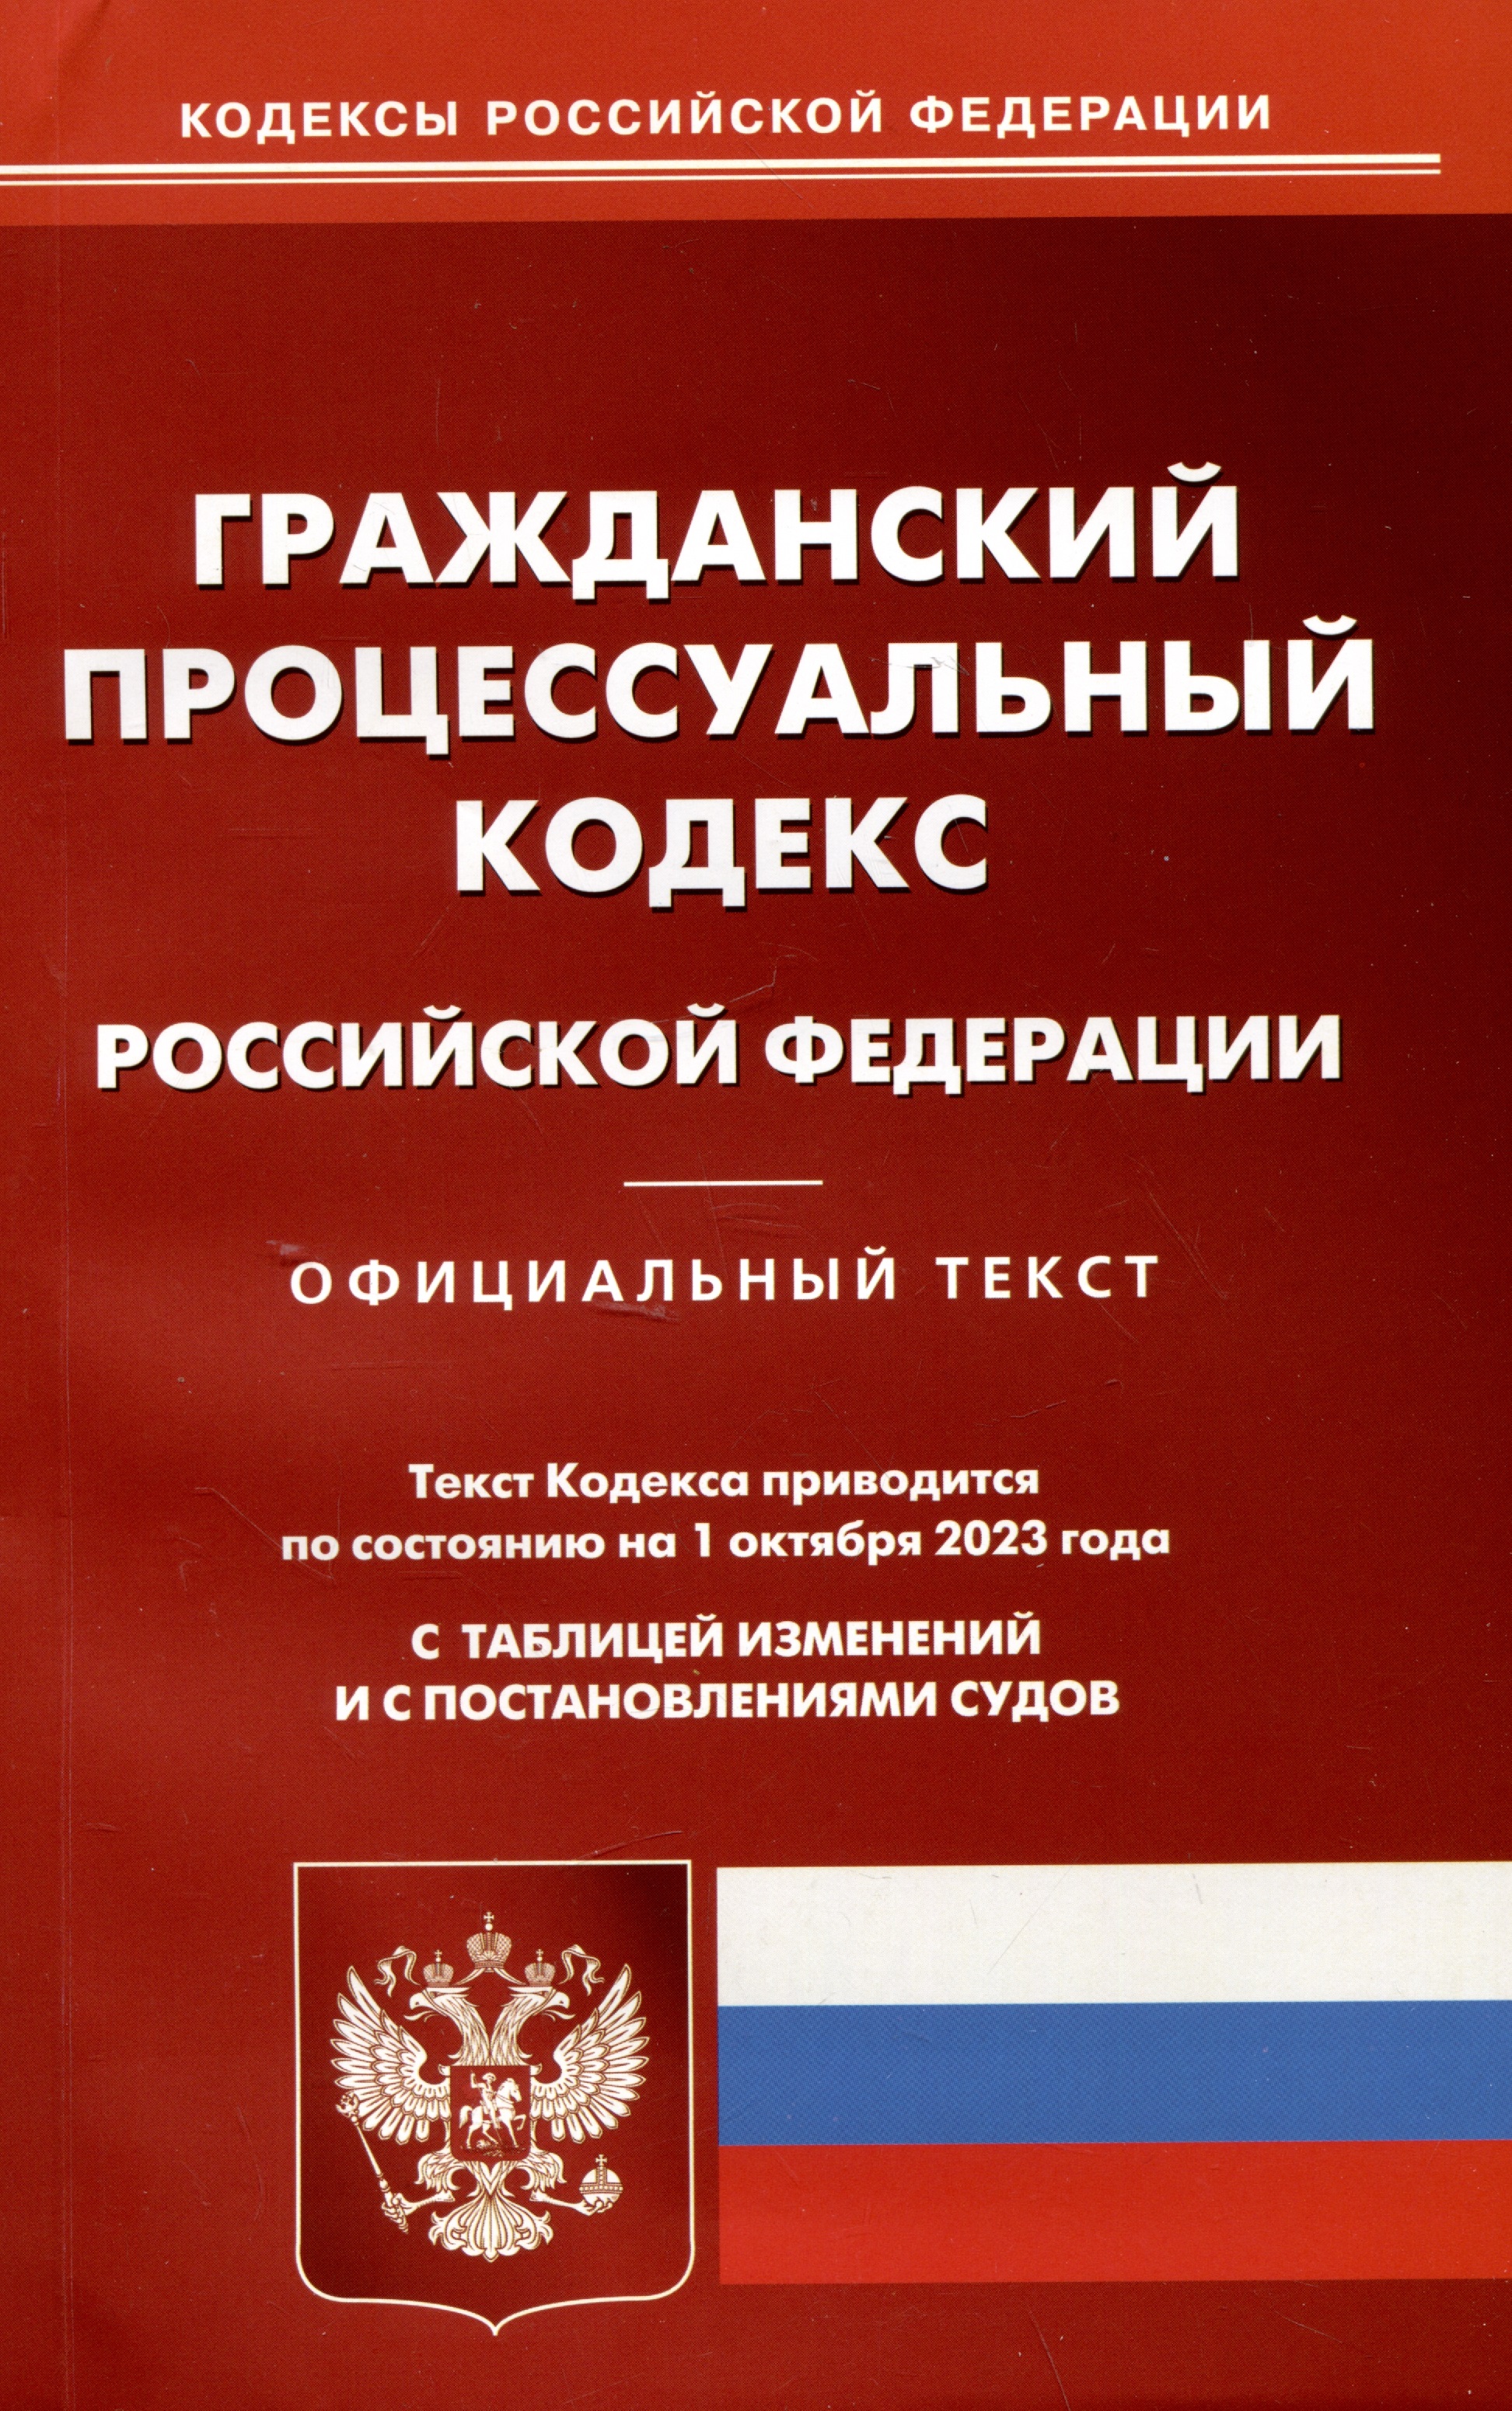 Гражданский-процессуальный кодекс Российской Федерации гражданский процессуальный кодекс российской федерации